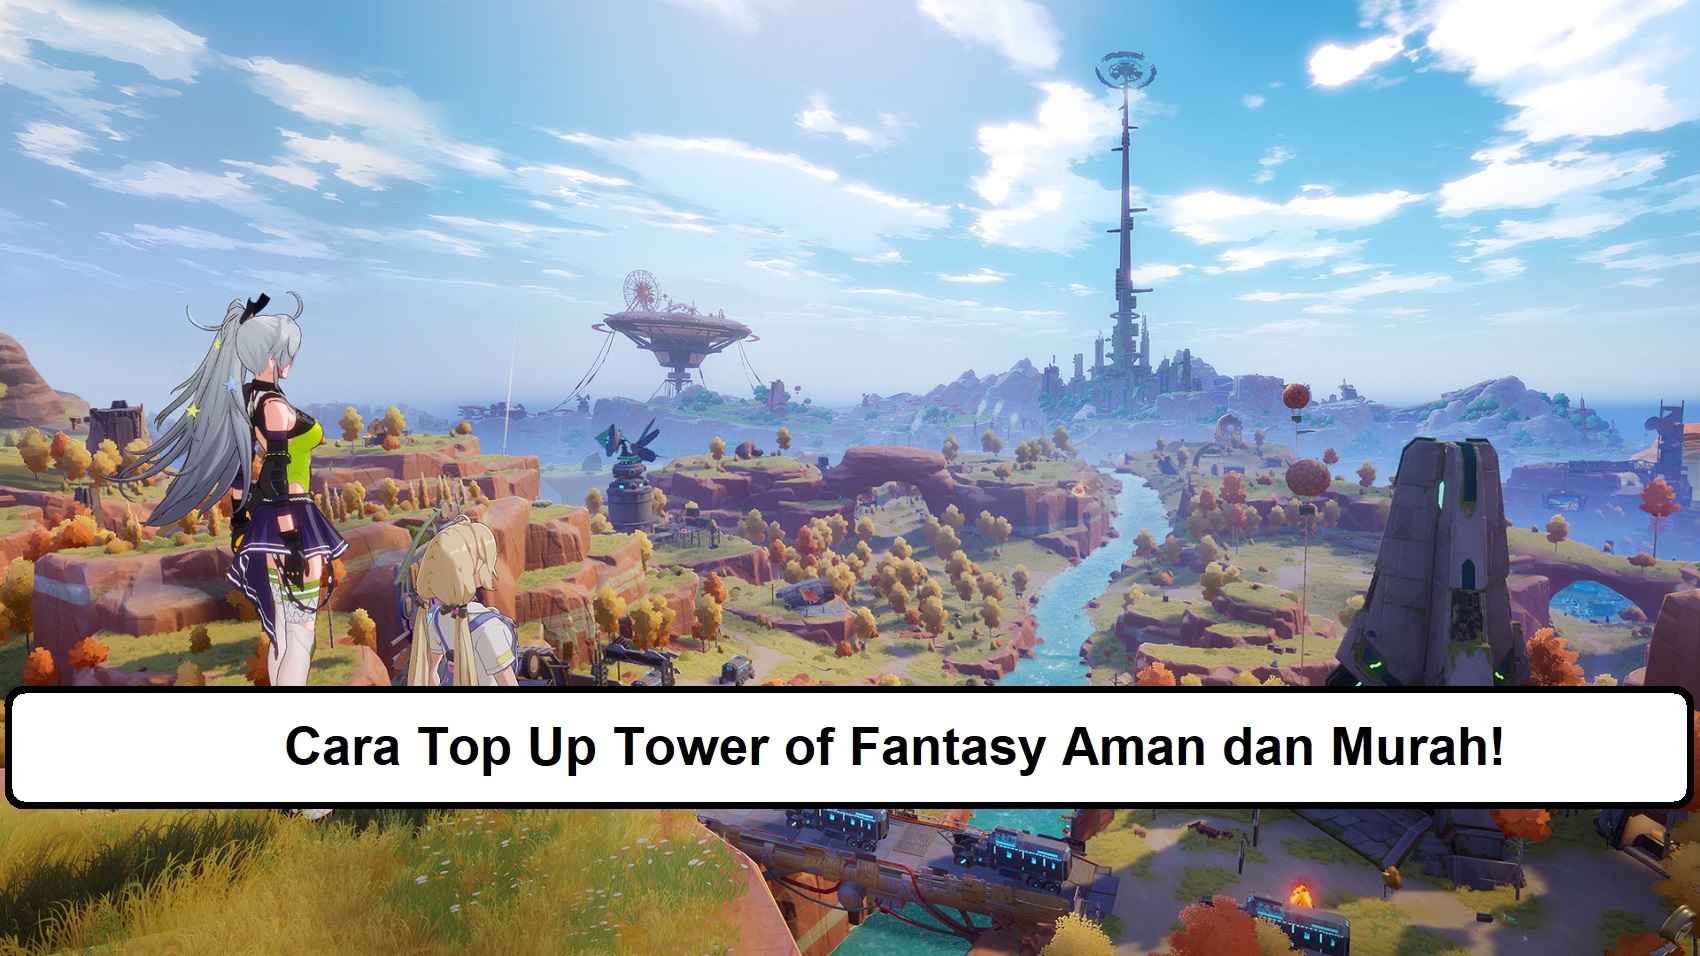 Cara Top Up Tower of Fantasy Aman dan Murah!